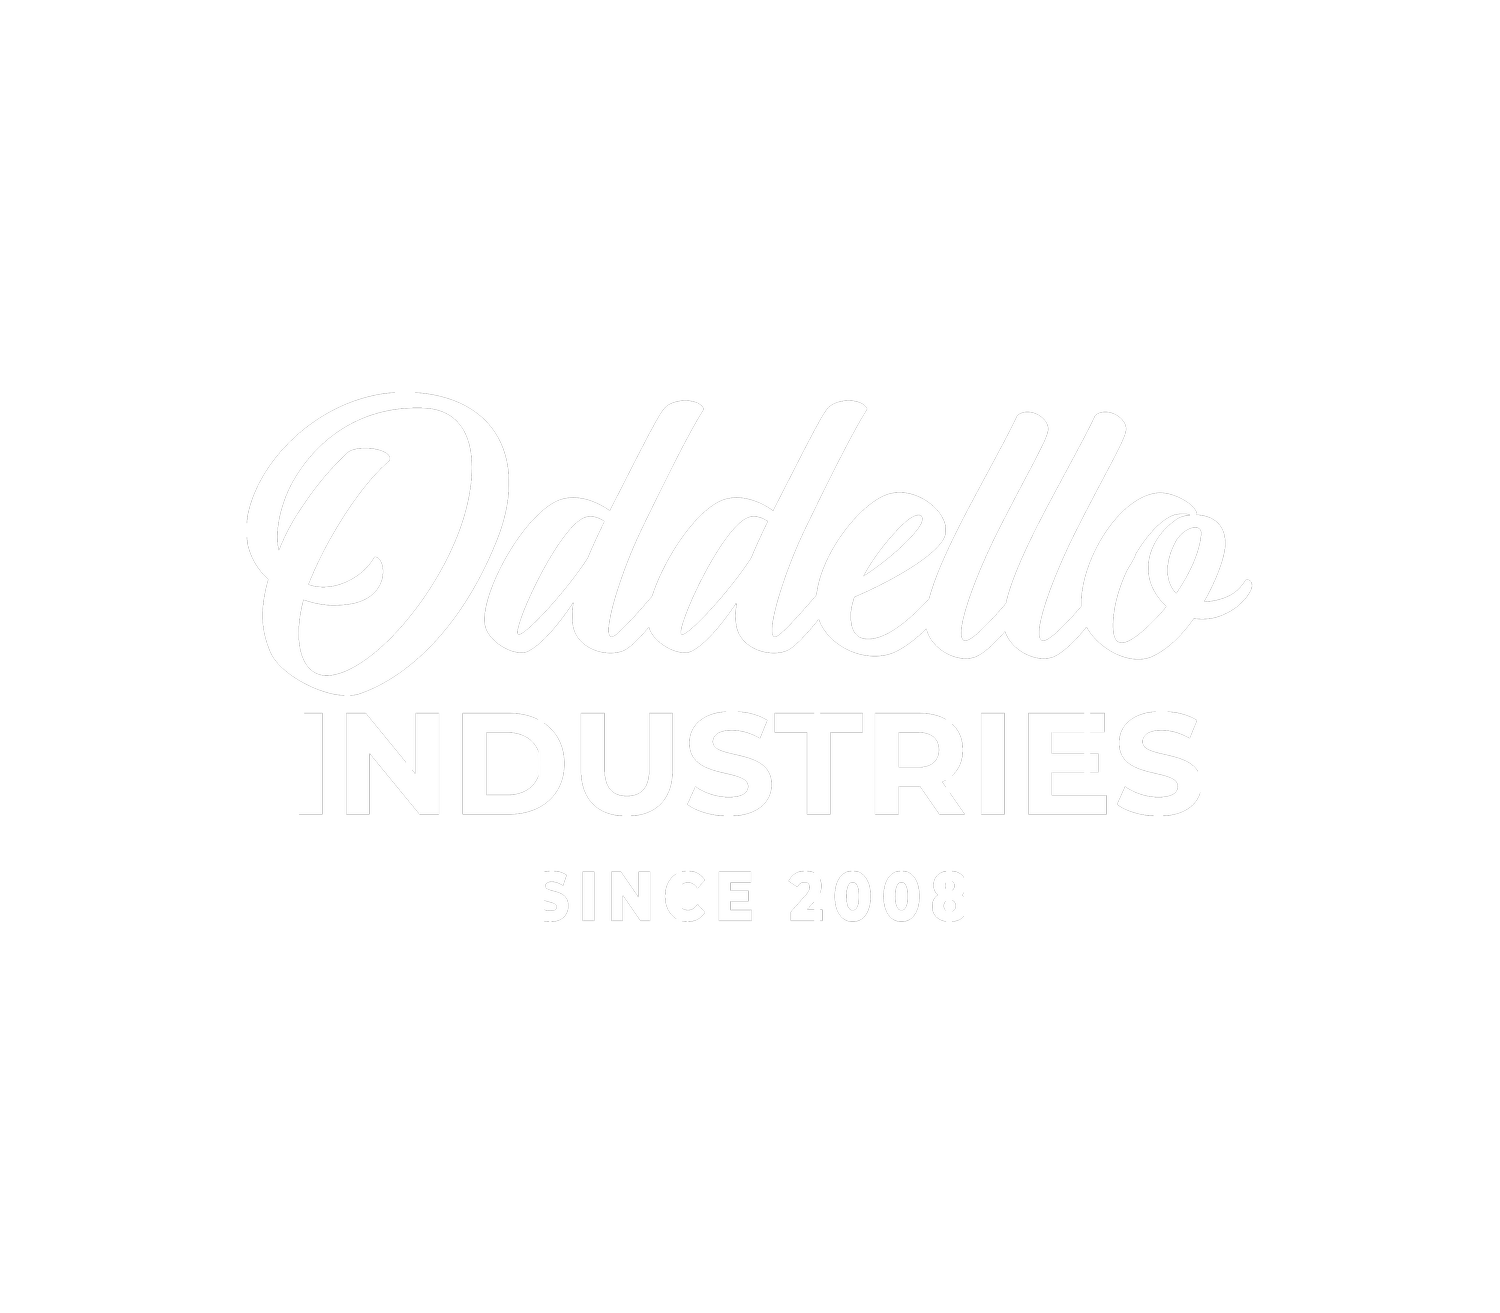 Oddello Industries 